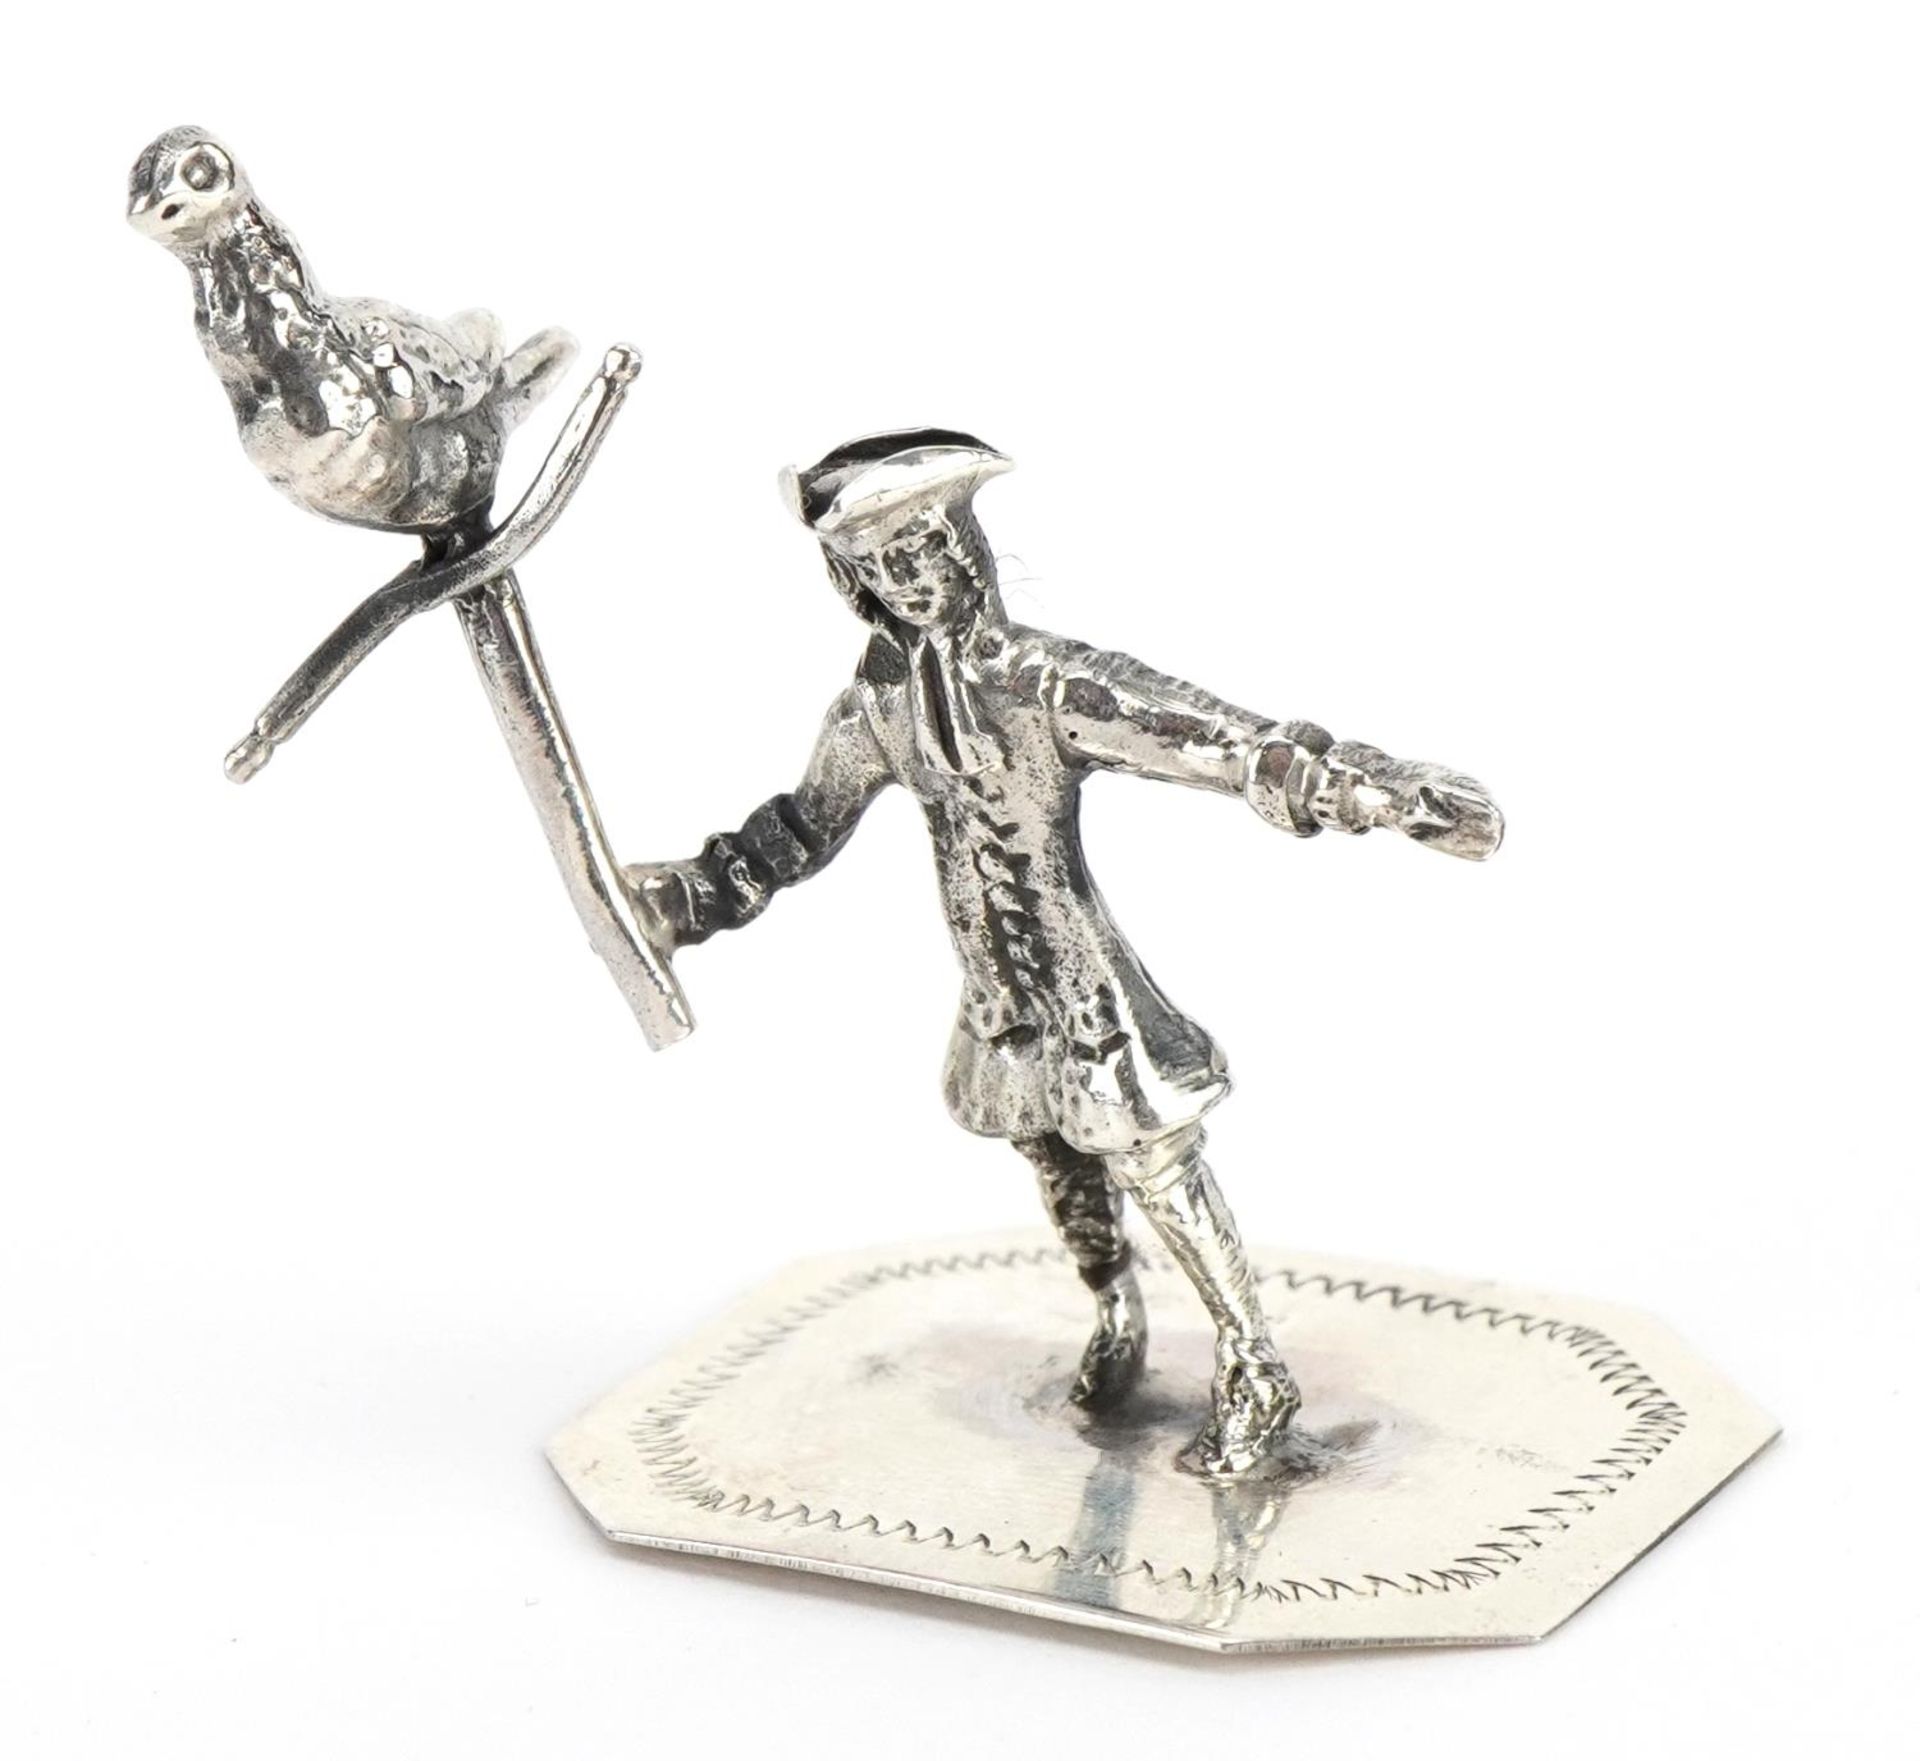 Miniature sterling silver figure of a gentleman holding a bird on a perch, 4cm high, 13.5g